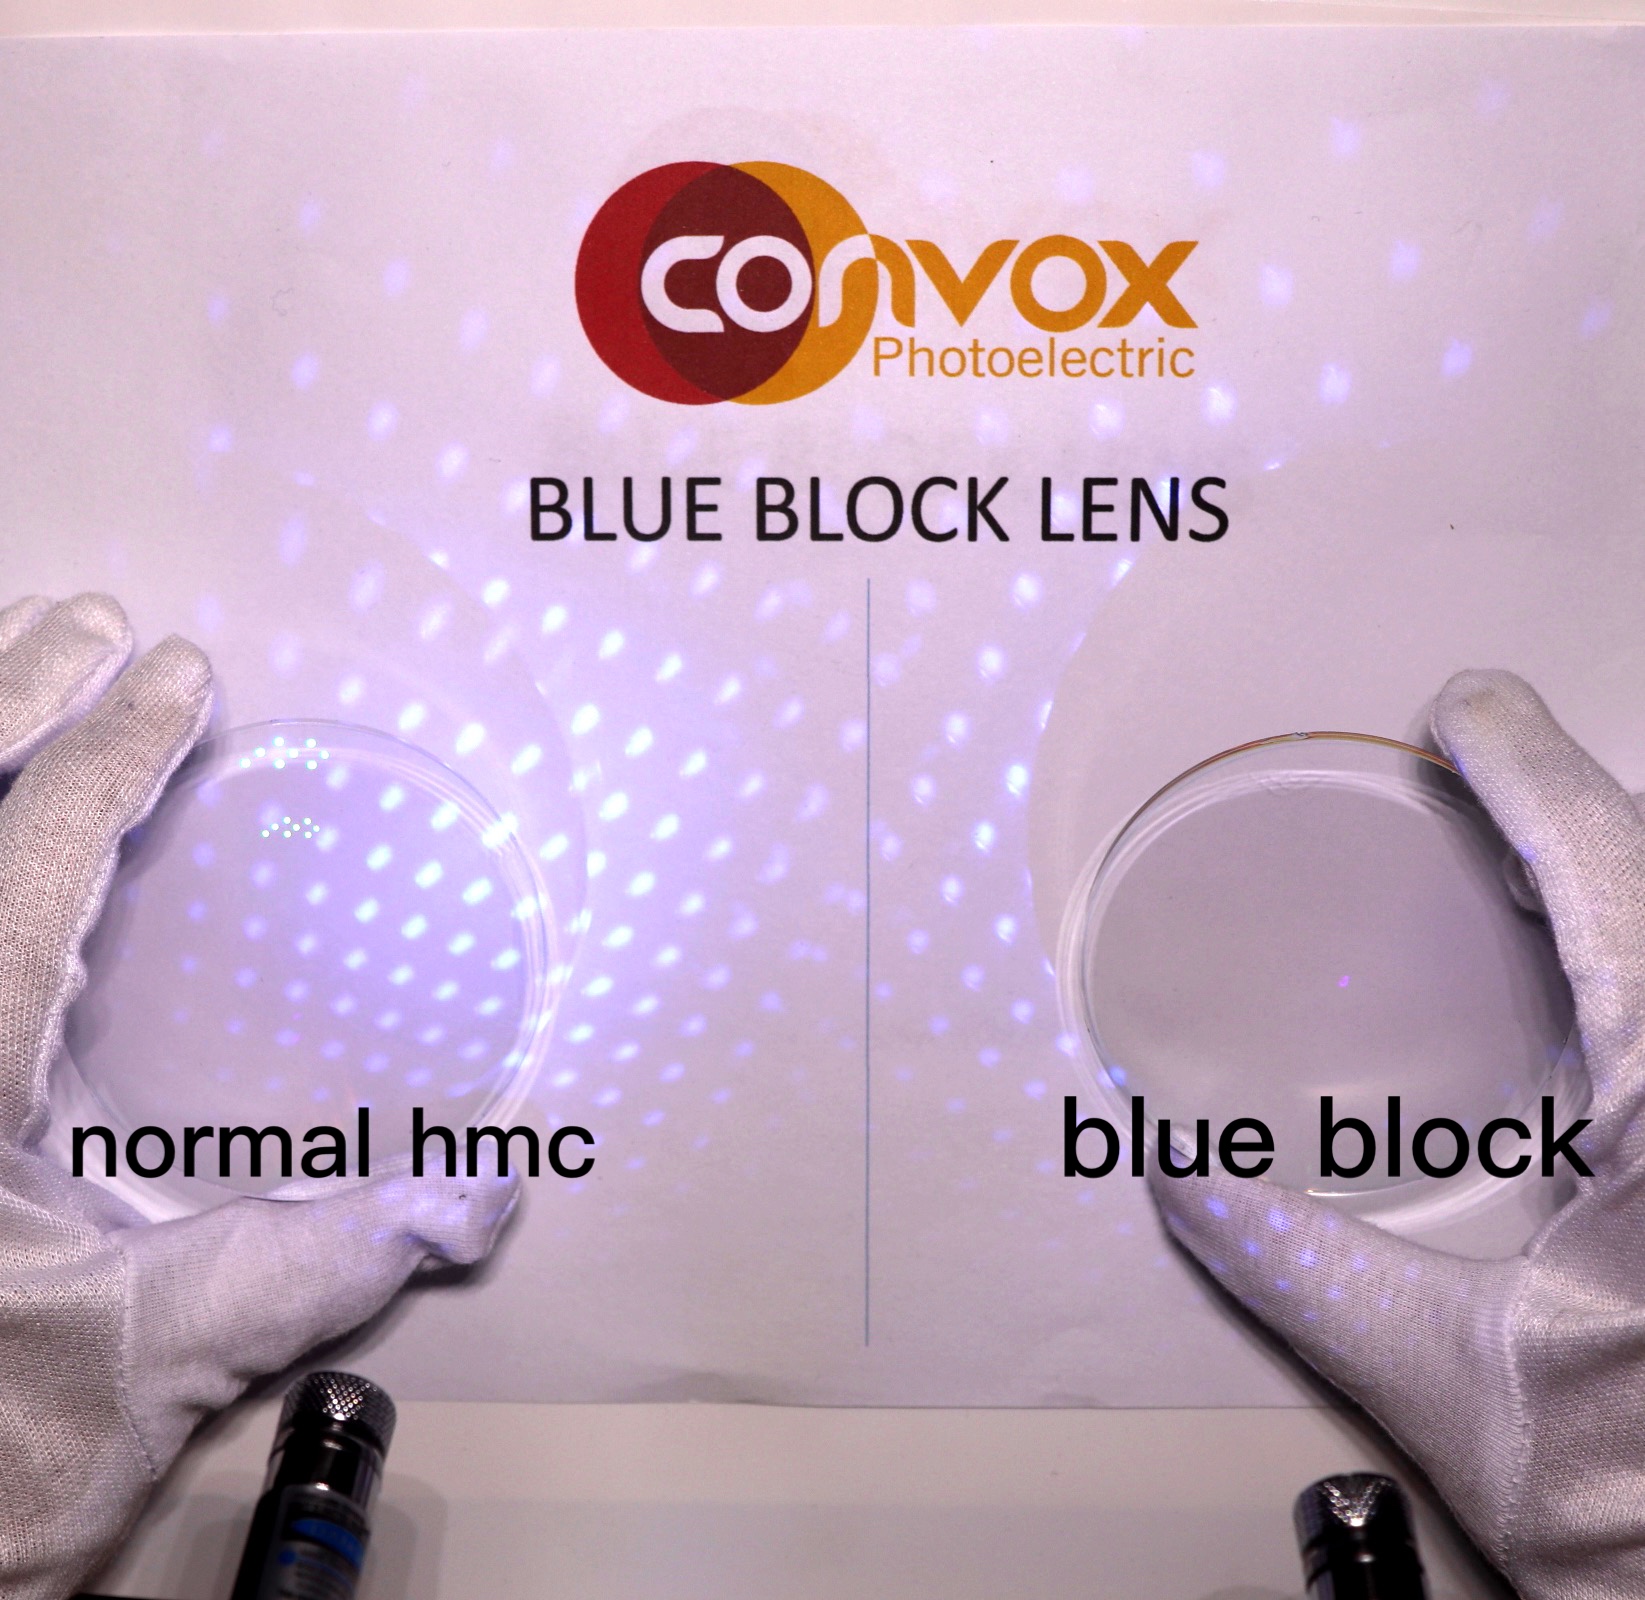 Mavi bloklu gözlükler gözleri koruyabilir ve miyopiyi önleyebilir mi?Fark etme!Herkes için uygun değil